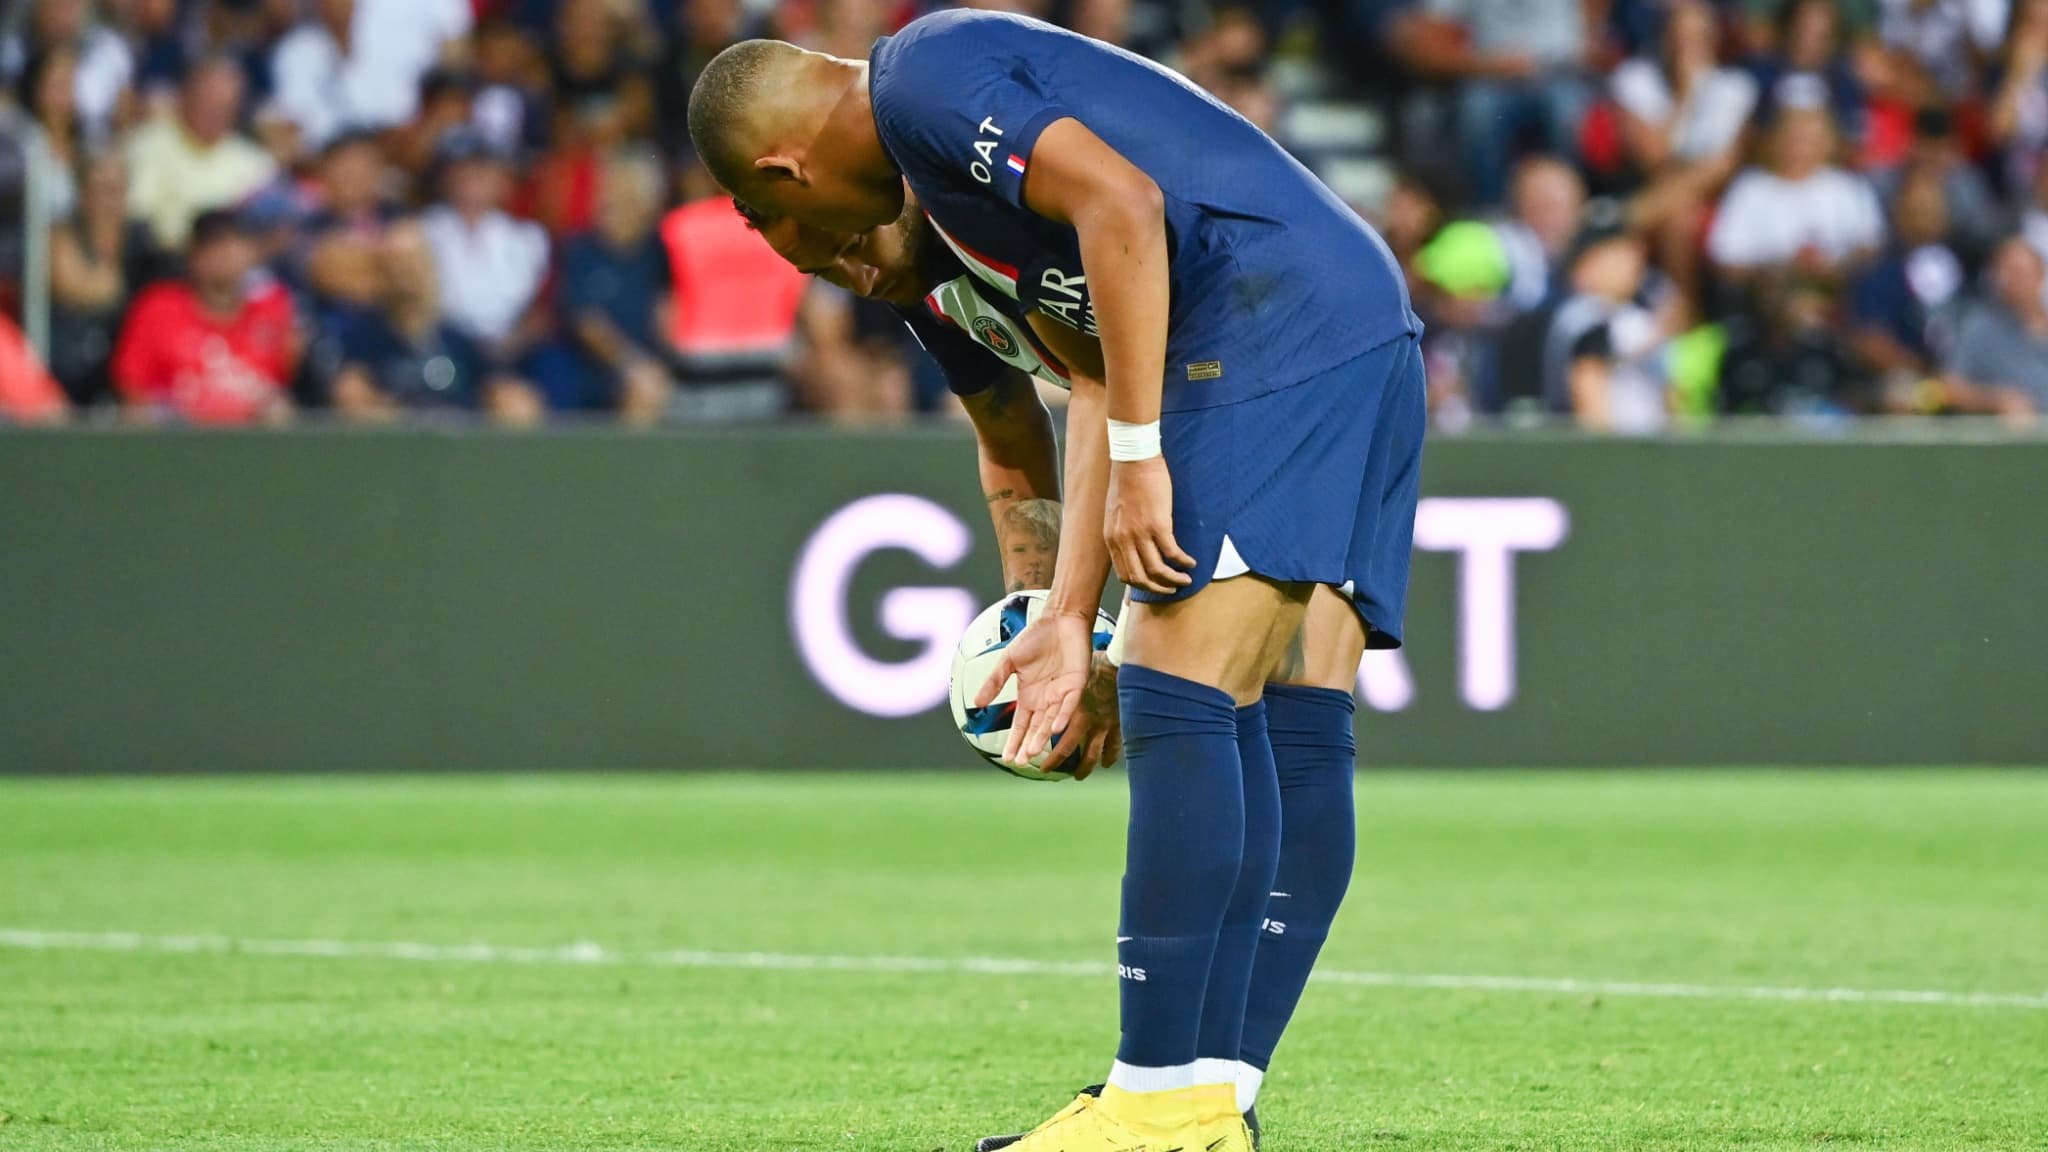 Le penaltygate entre Neymar et Mbappe lors de PSG Montpellier le 13 aout 2022 1464974 1